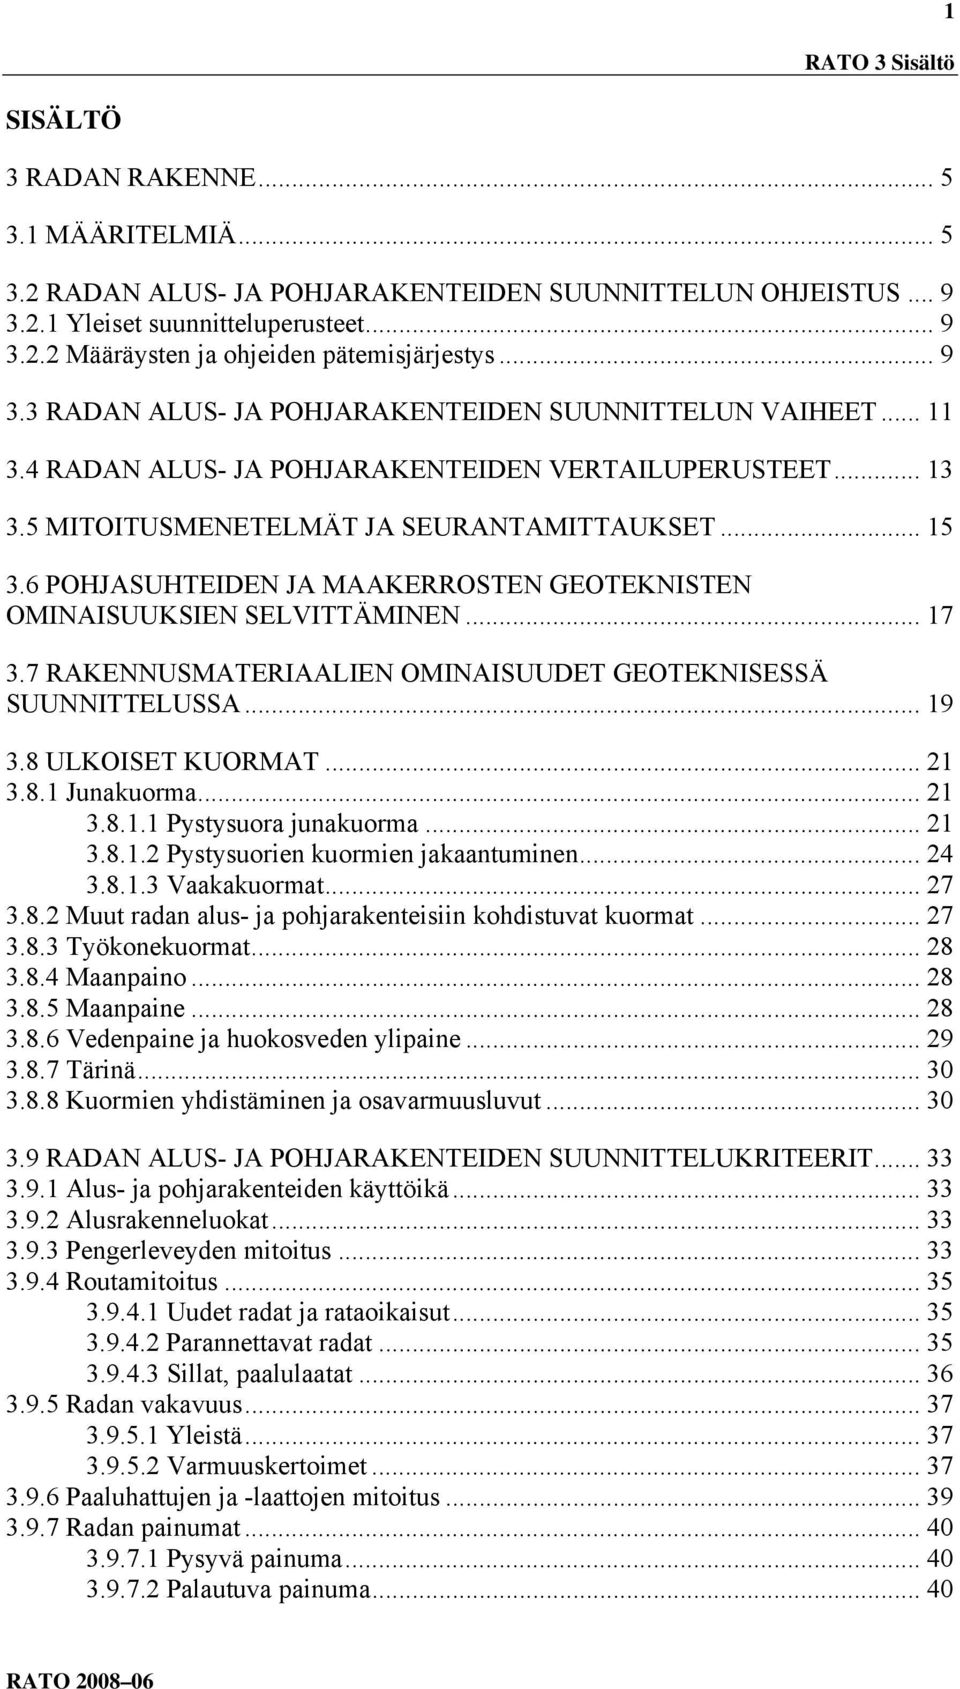 6 POHJASUHTEIDEN JA MAAKERROSTEN GEOTEKNISTEN OMINAISUUKSIEN SELVITTÄMINEN... 17 3.7 RAKENNUSMATERIAALIEN OMINAISUUDET GEOTEKNISESSÄ SUUNNITTELUSSA... 19 3.8 ULKOISET KUORMAT... 21 3.8.1 Junakuorma.